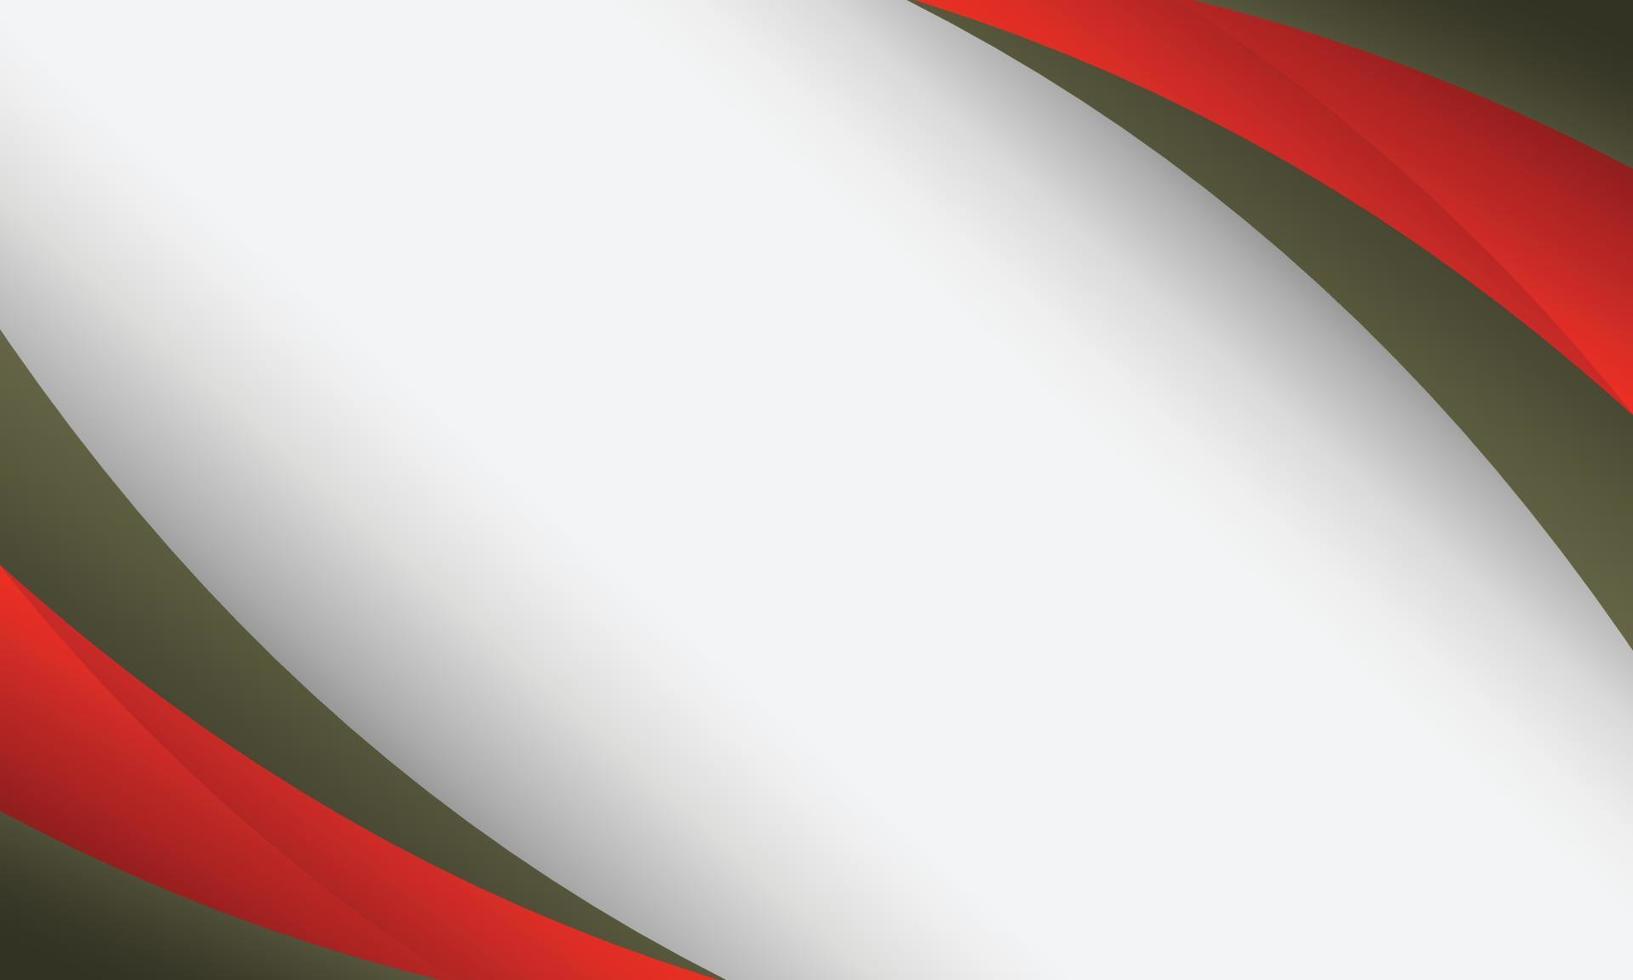 abstracte elegante rode en groene golf op een witte achtergrond. vector